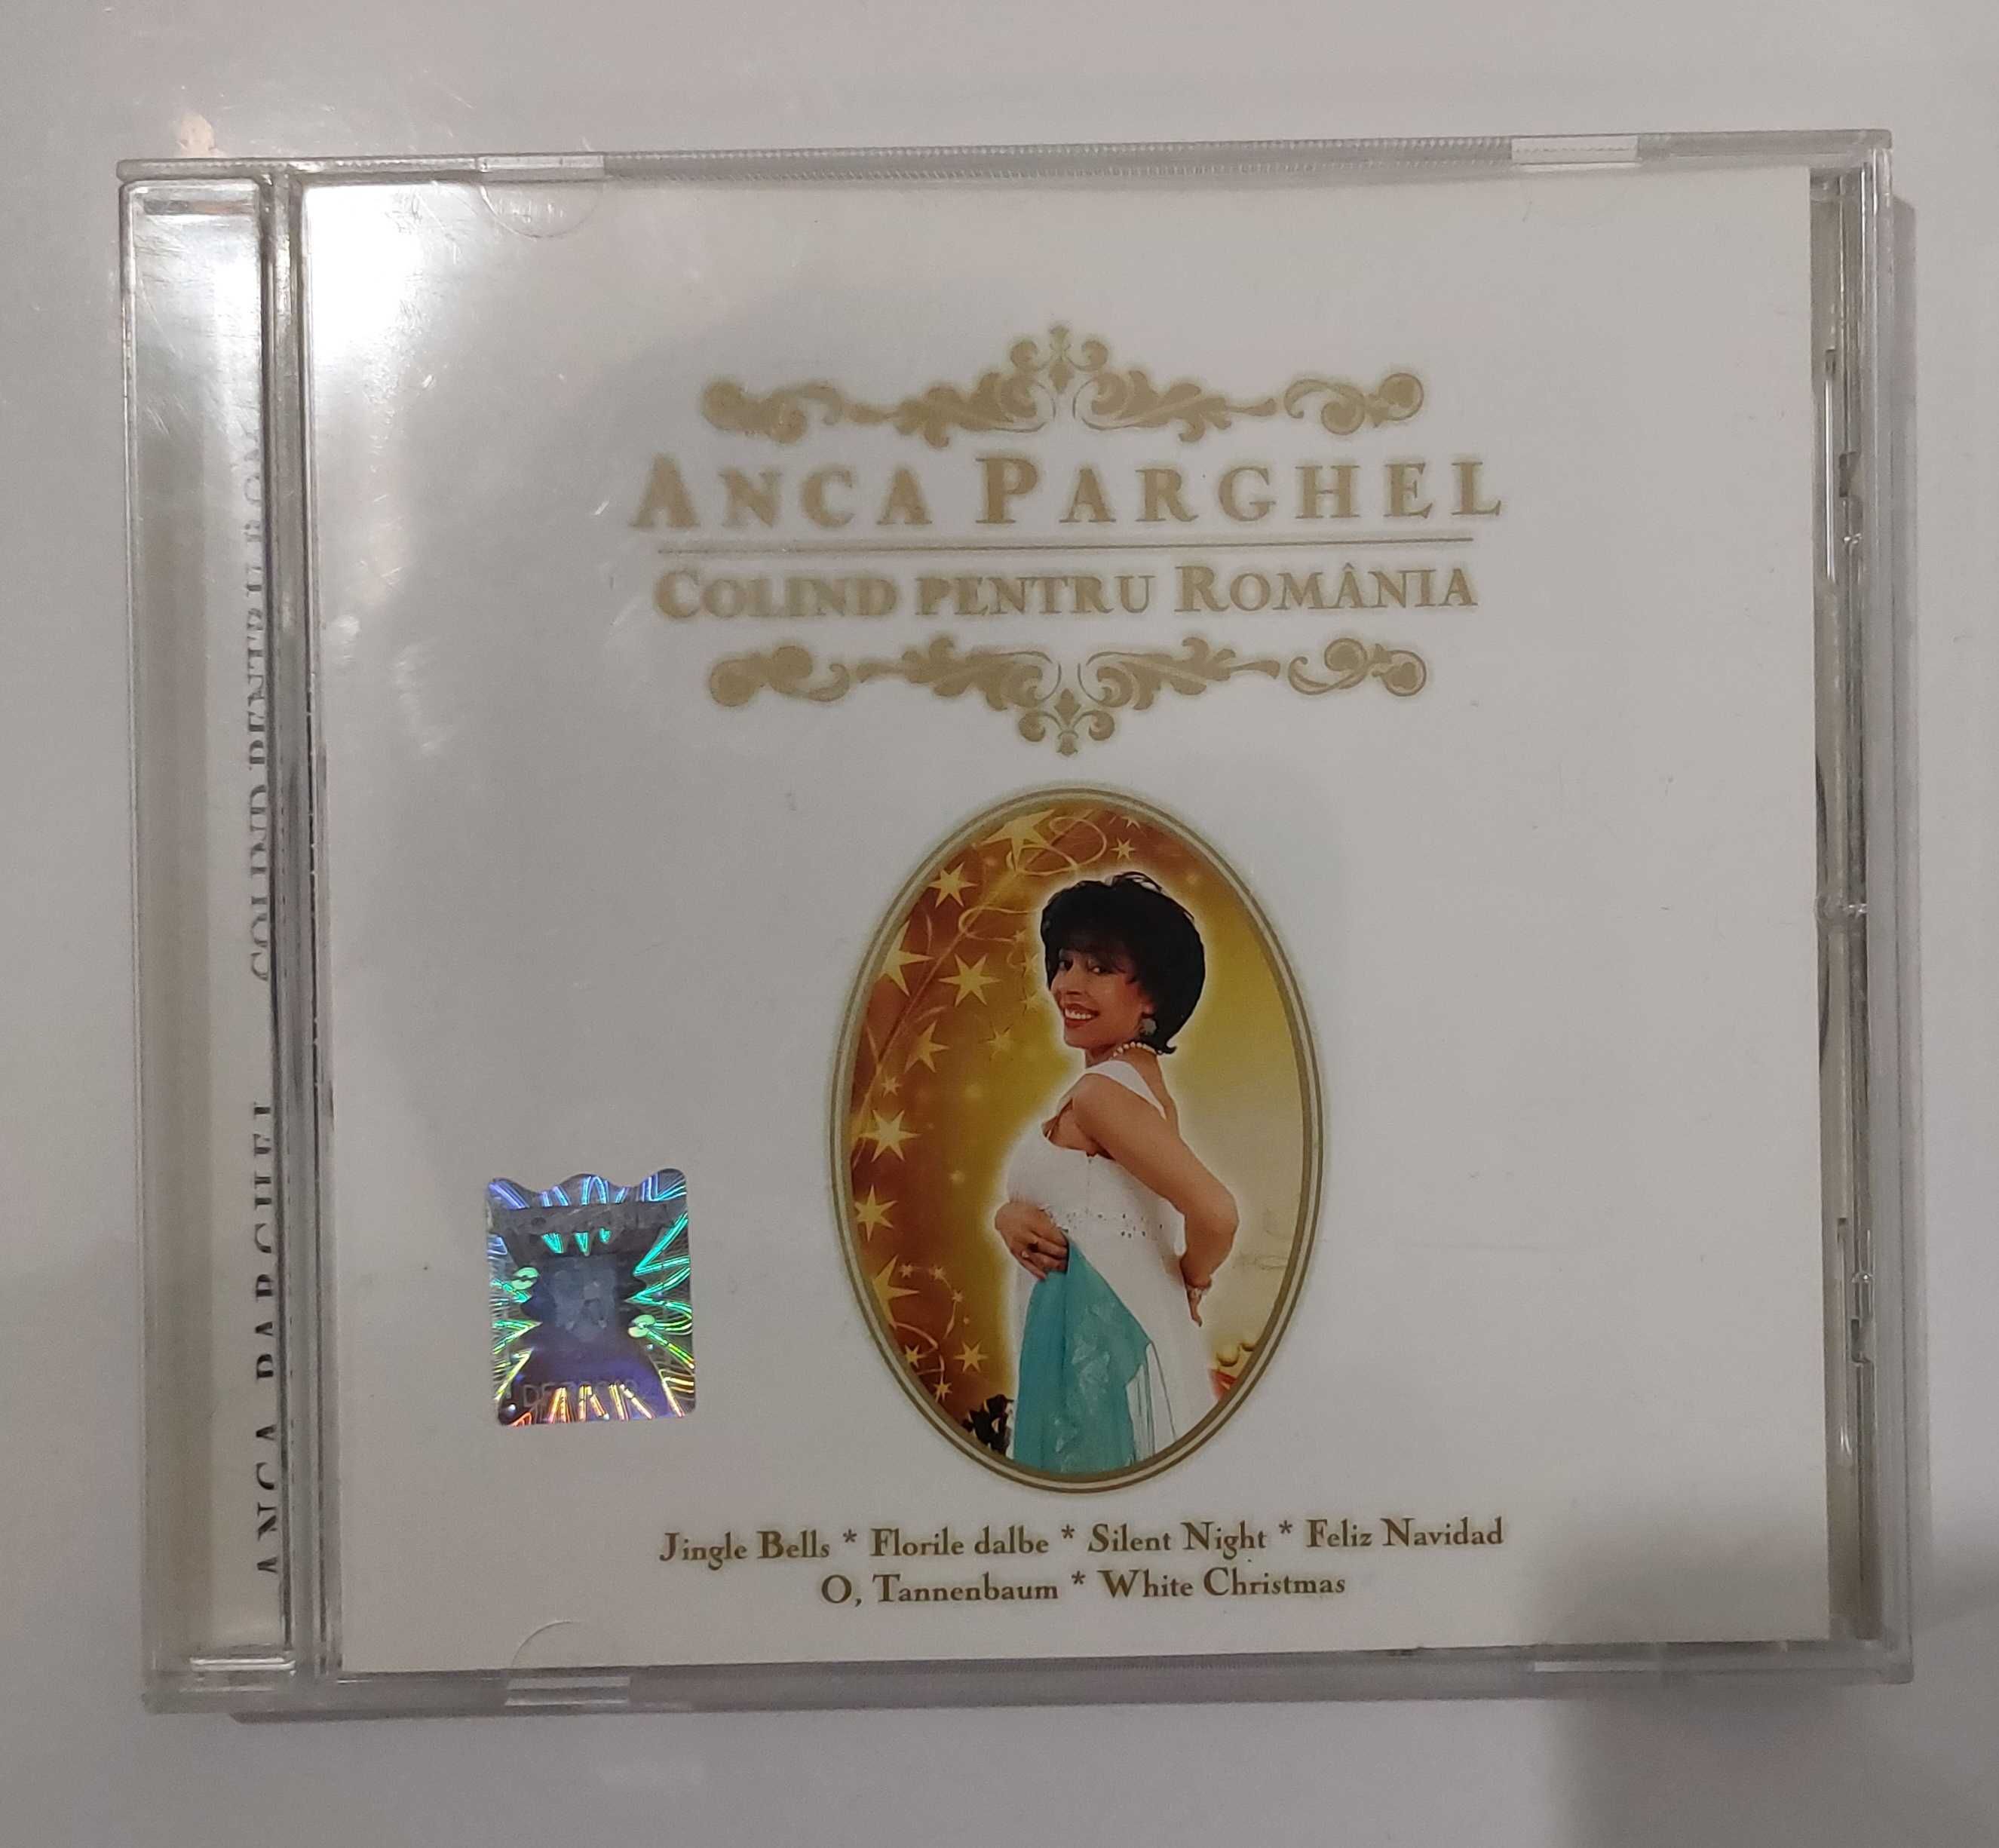 Anca Parghel - Colind pentru Romania (cd audio)